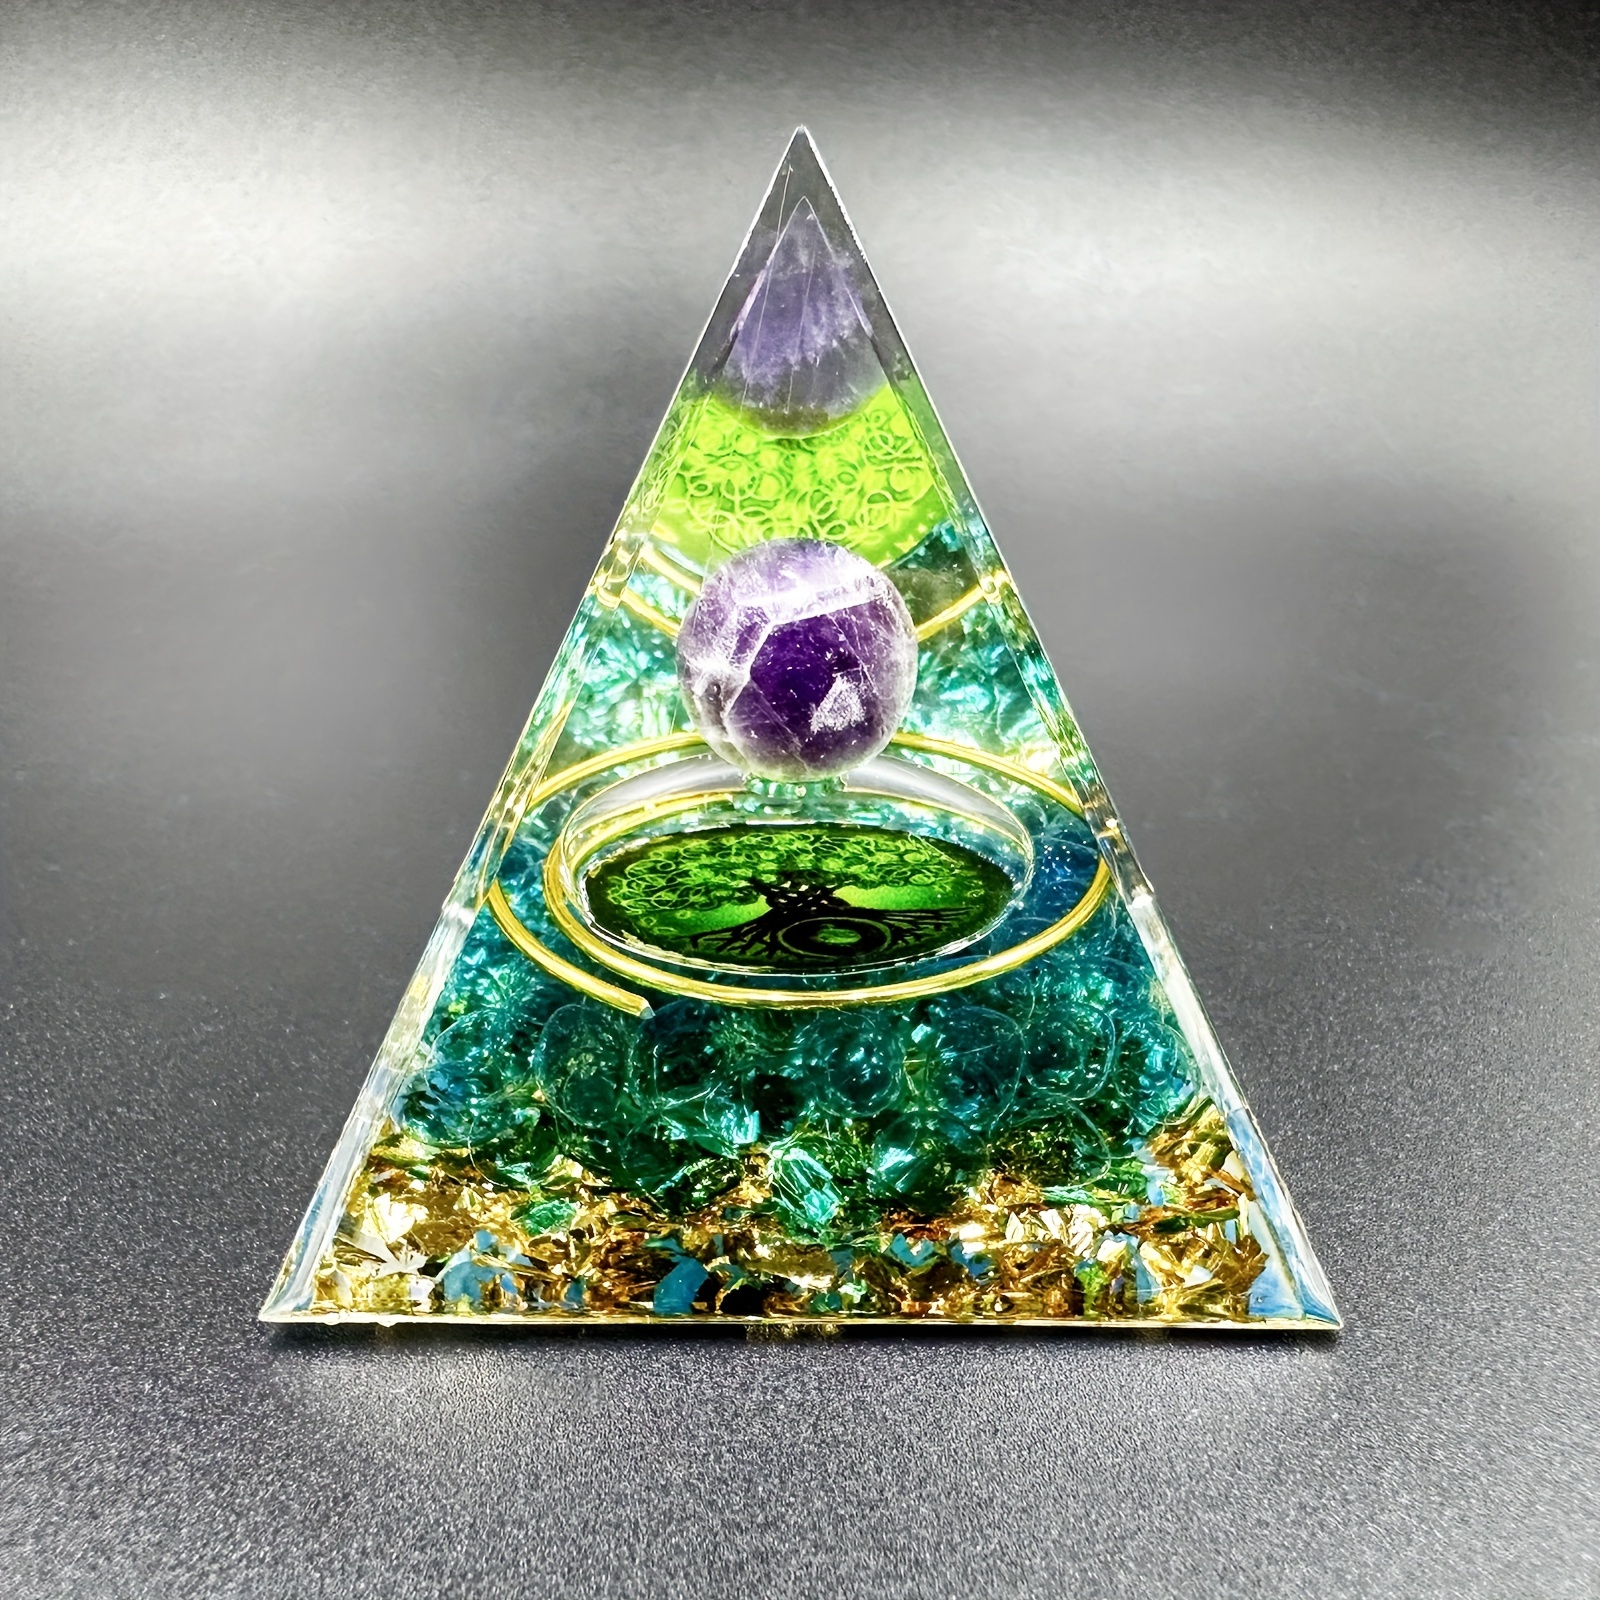 Albero orgonico: pendenti di cristallo e piramidi per la